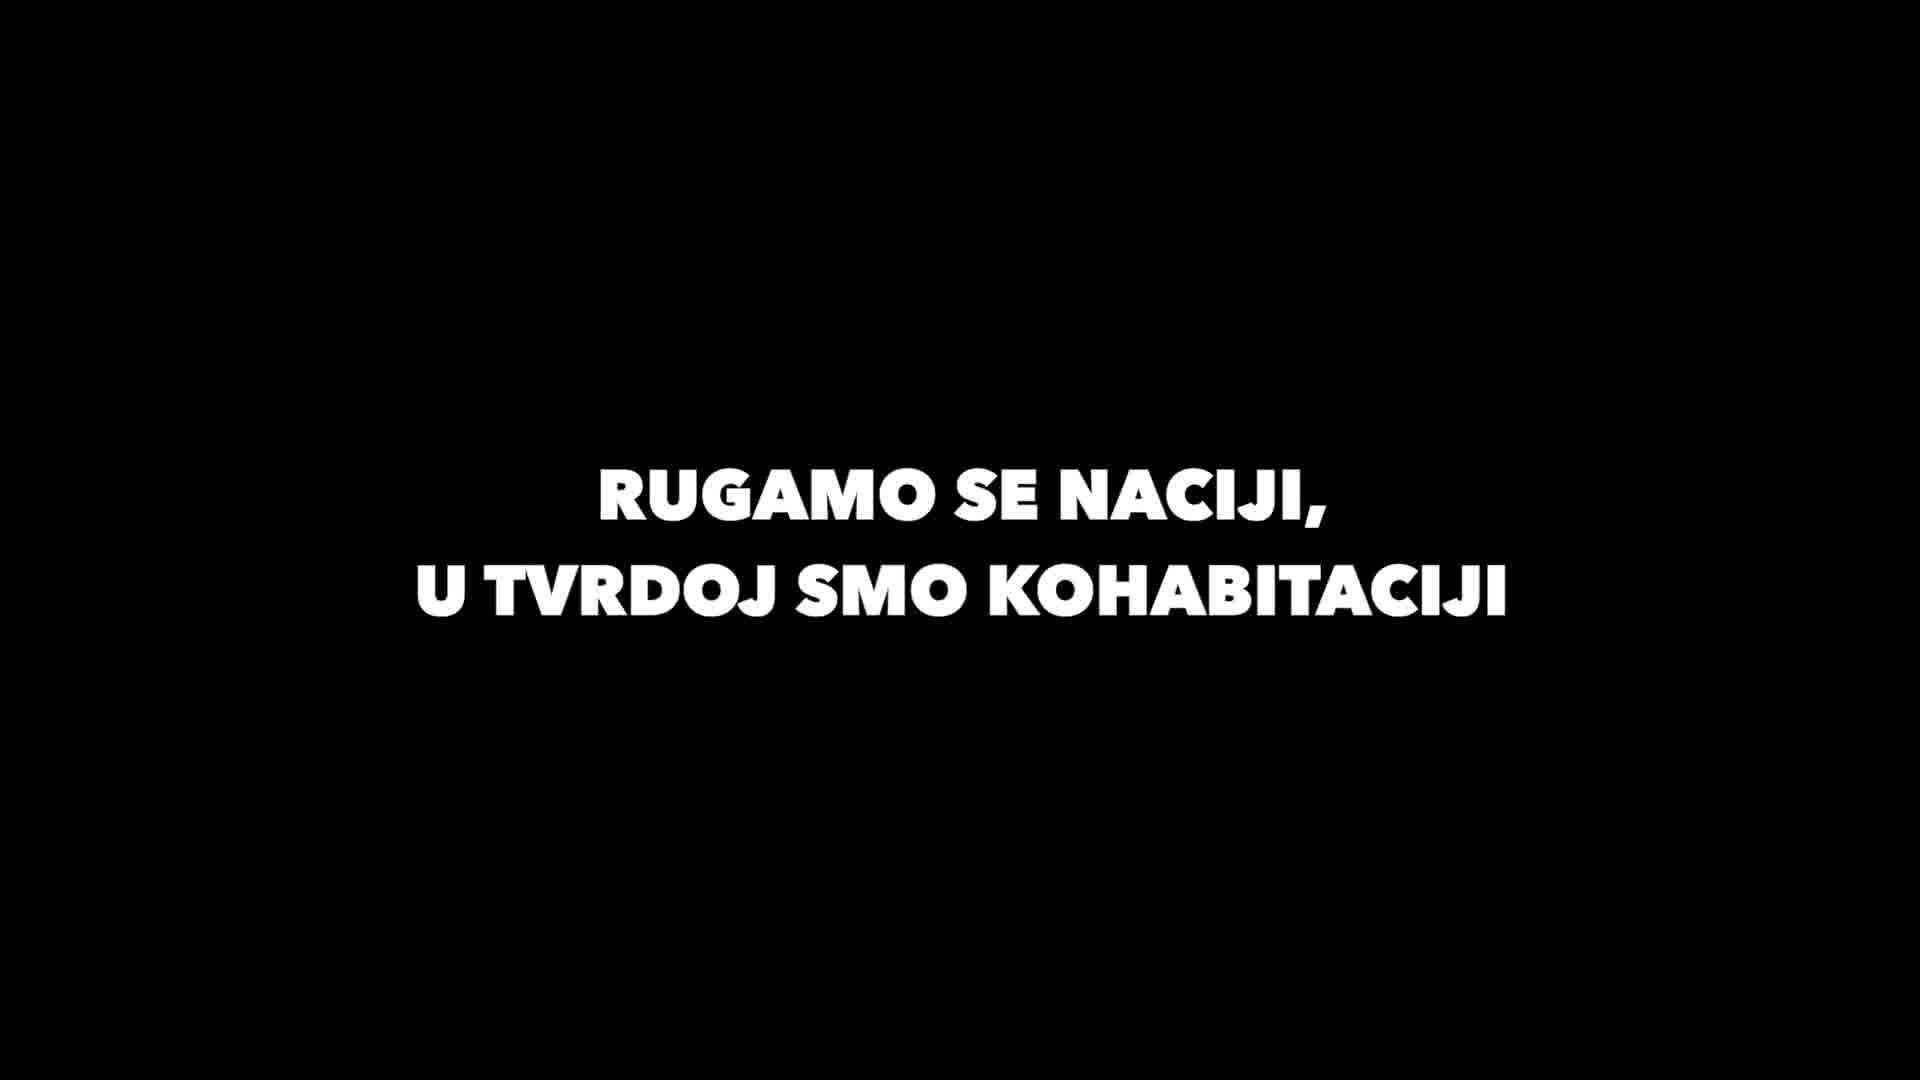 Rap okršaj između Milanovića i Plenkovića: 'Rugamo se naciji, dva brata nisu vidjela rata...'